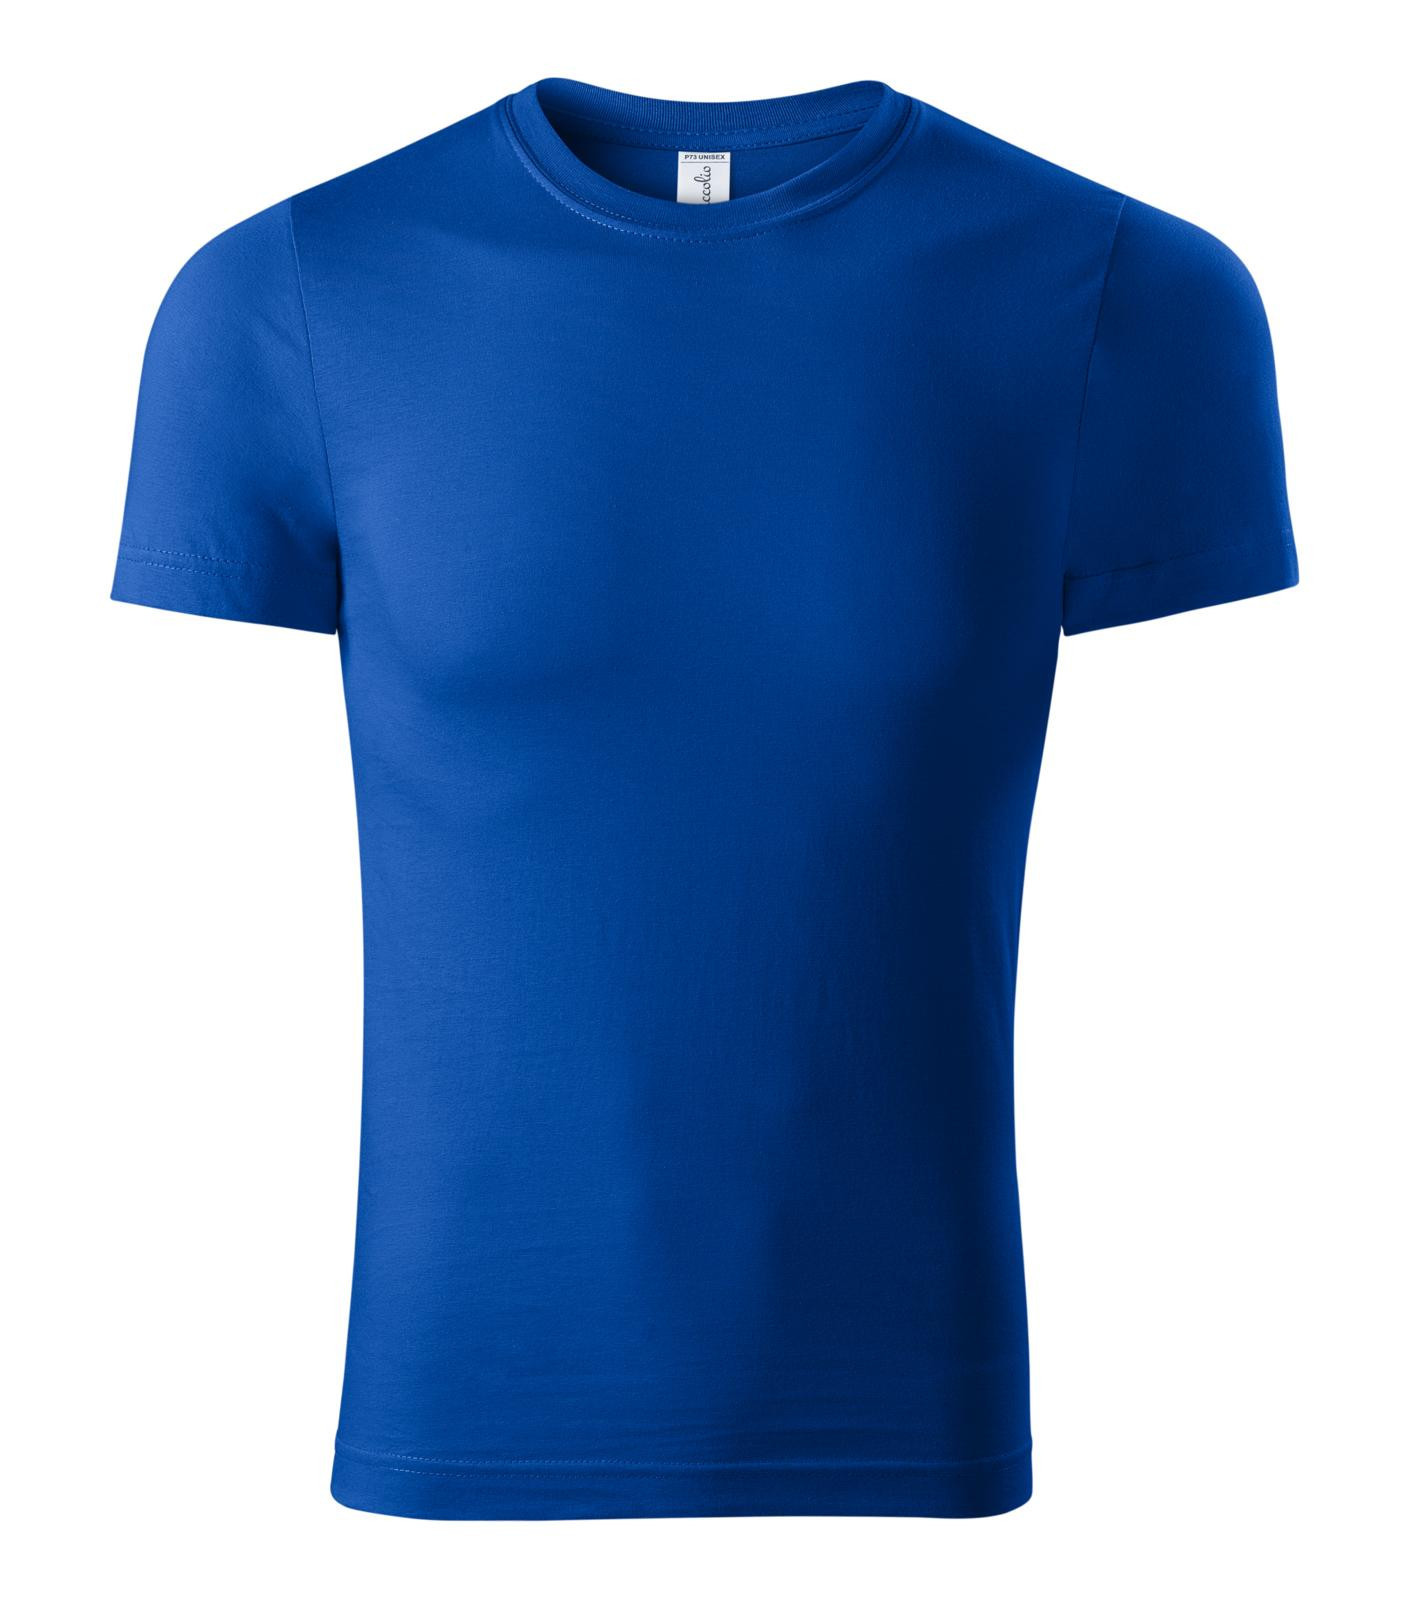 Unisex tričko Piccolio Paint P73 - veľkosť: S, farba: kráľovská modrá